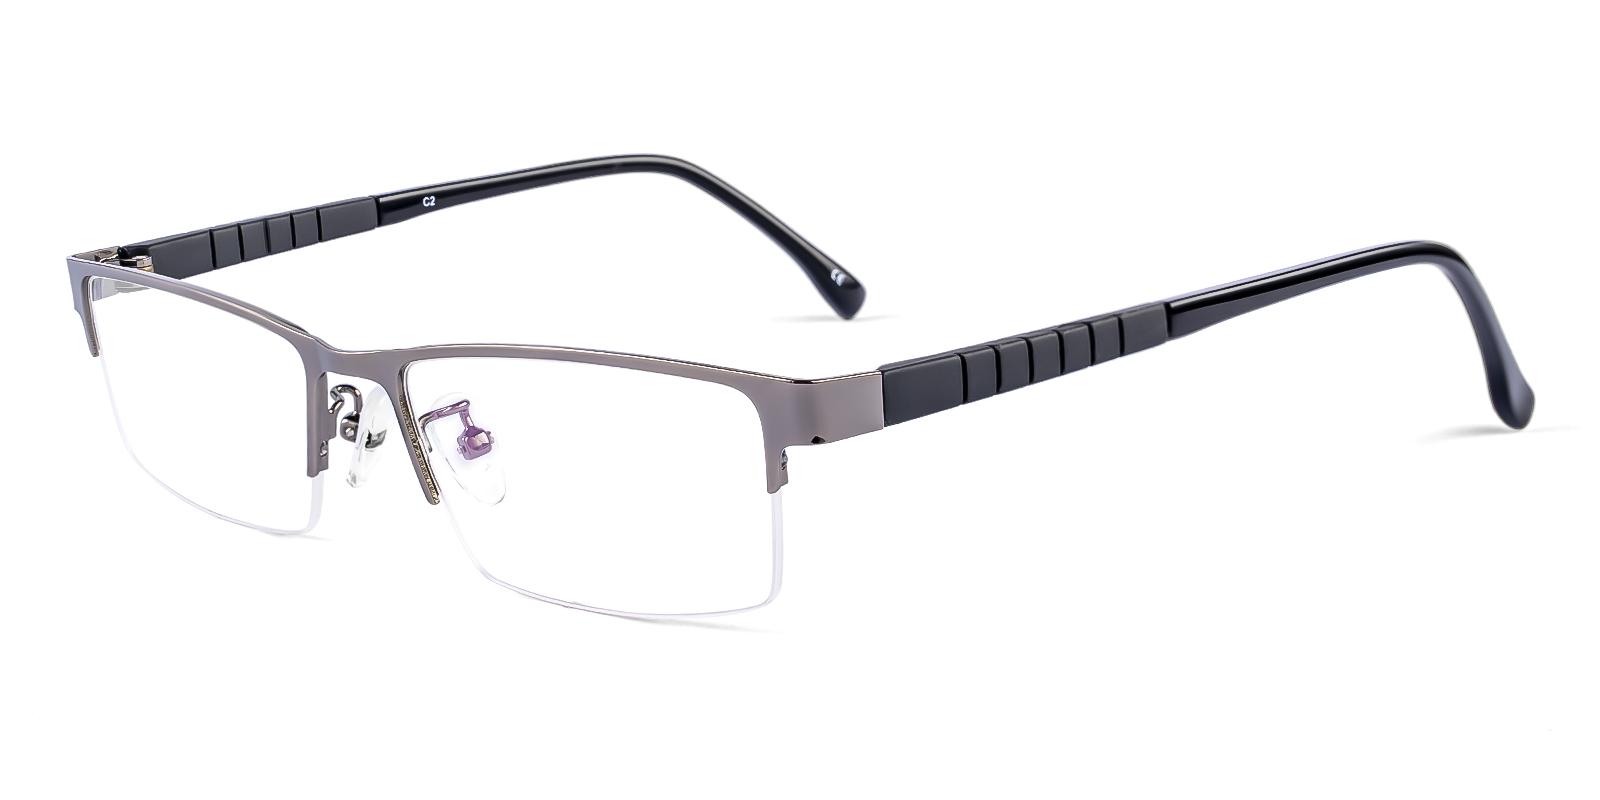 Vapa Gun Metal , TR Eyeglasses , NosePads Frames from ABBE Glasses